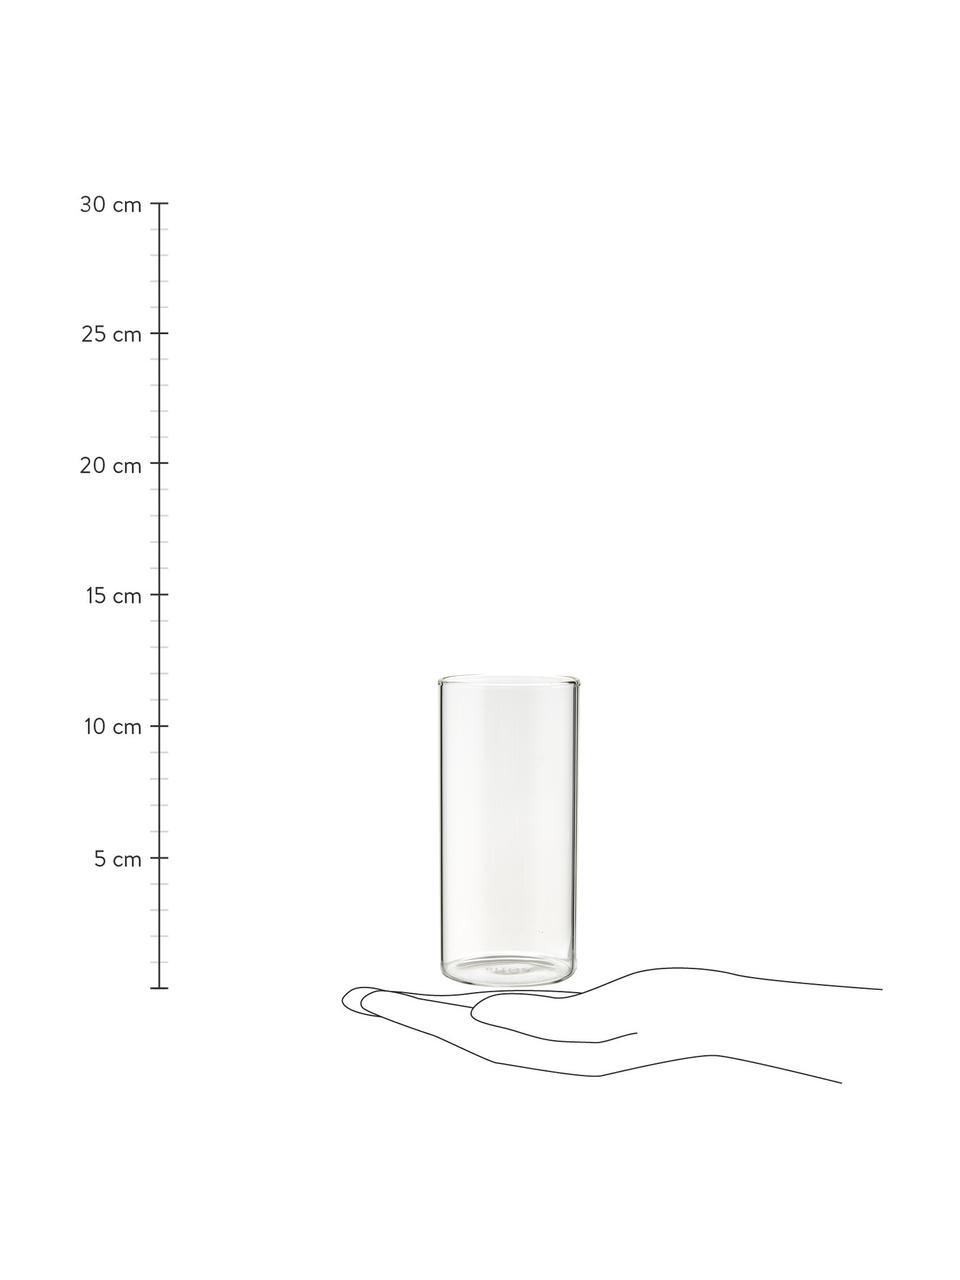 Bicchiere acqua in vetro borosilicato Boro 6 pz, Vetro borosilicato, Trasparente, Ø 6 x Alt. 12 cm